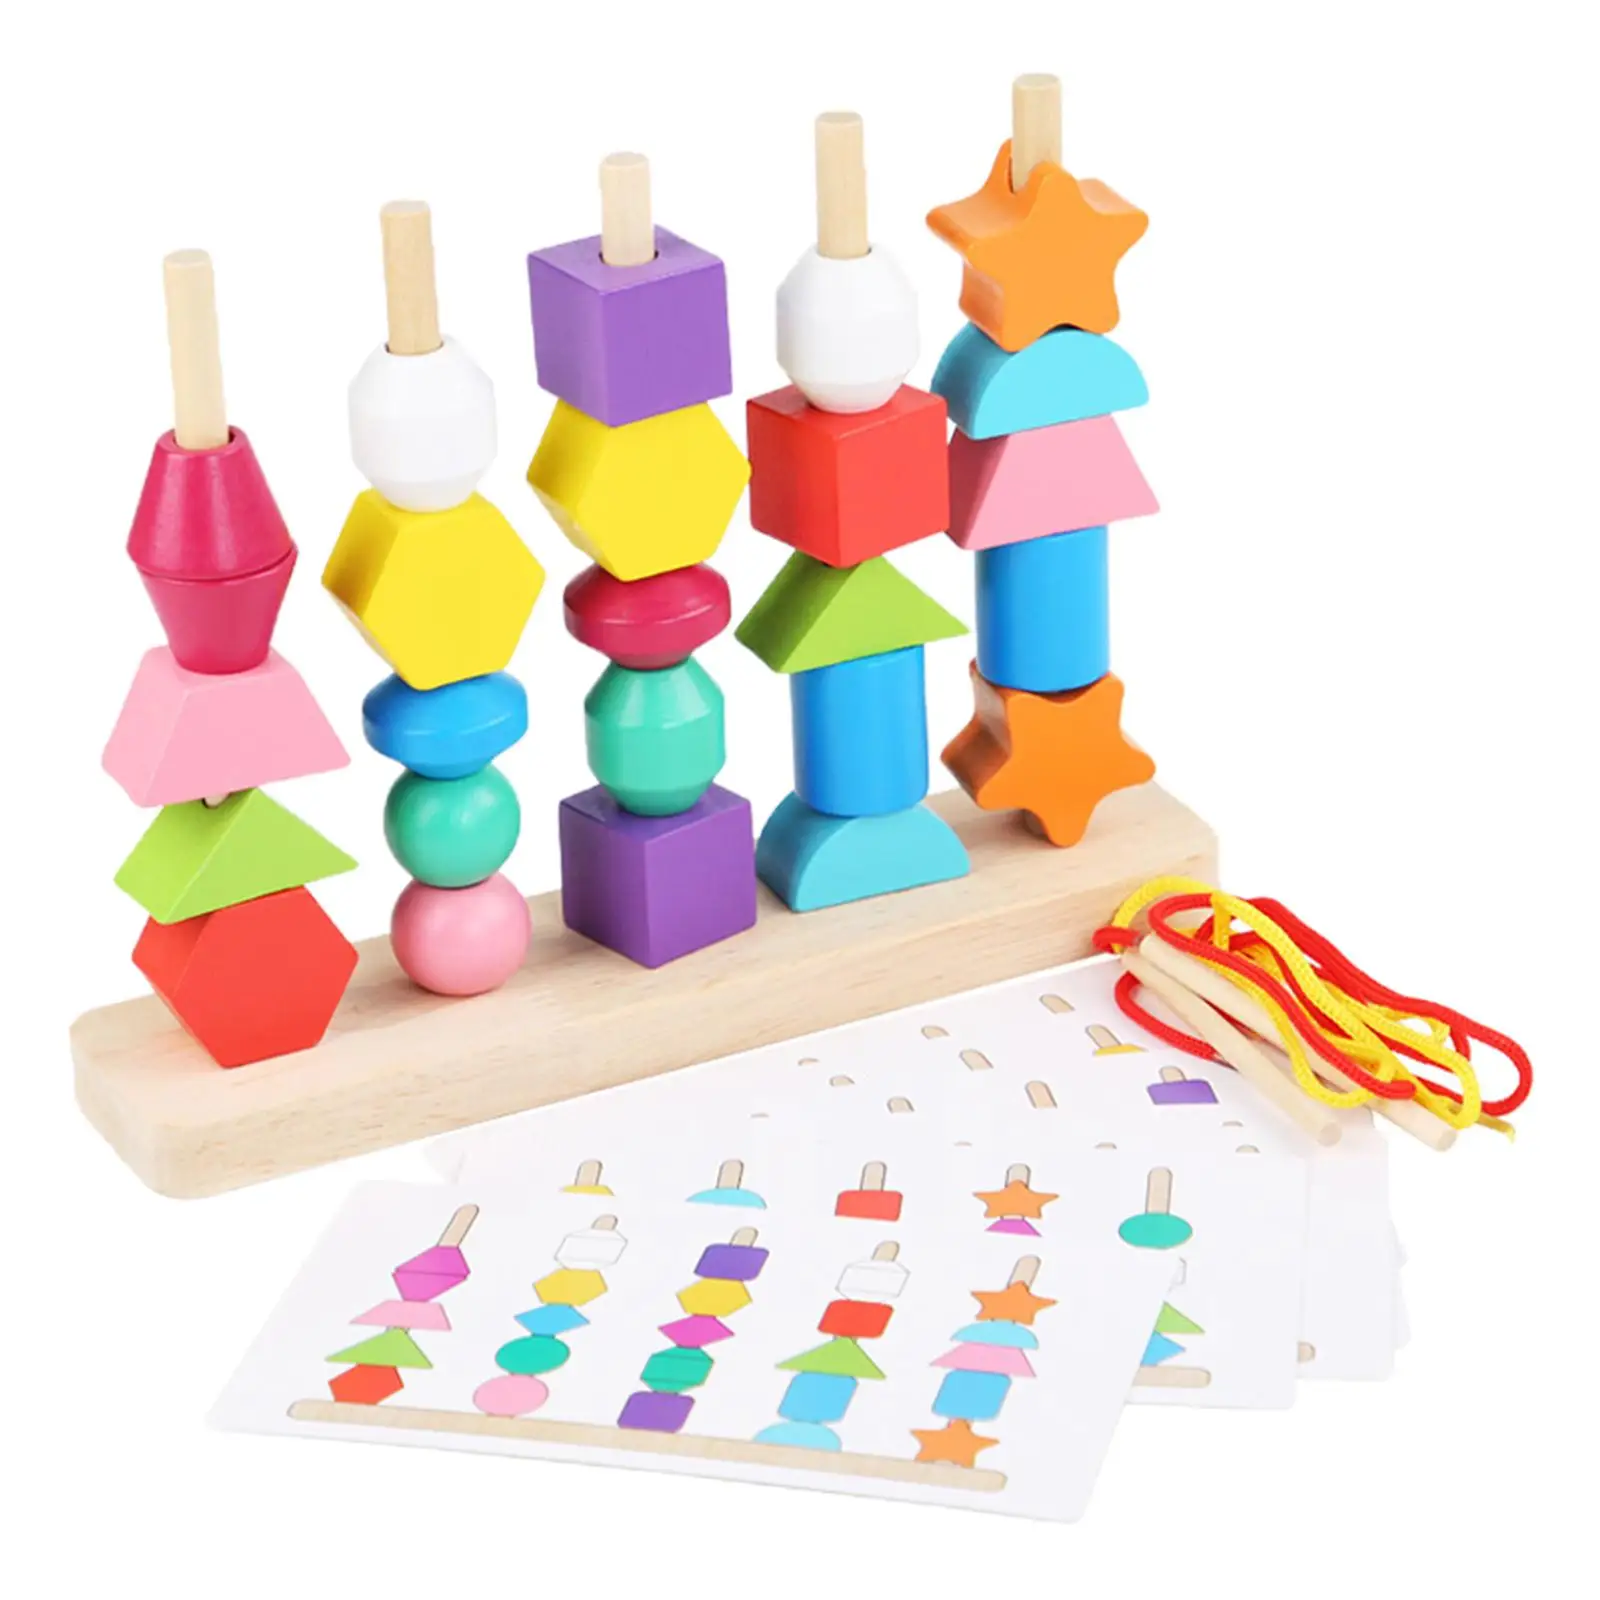 Beaded Toys Wooden Educational Enlightenment Sensory Toys for Children Kids